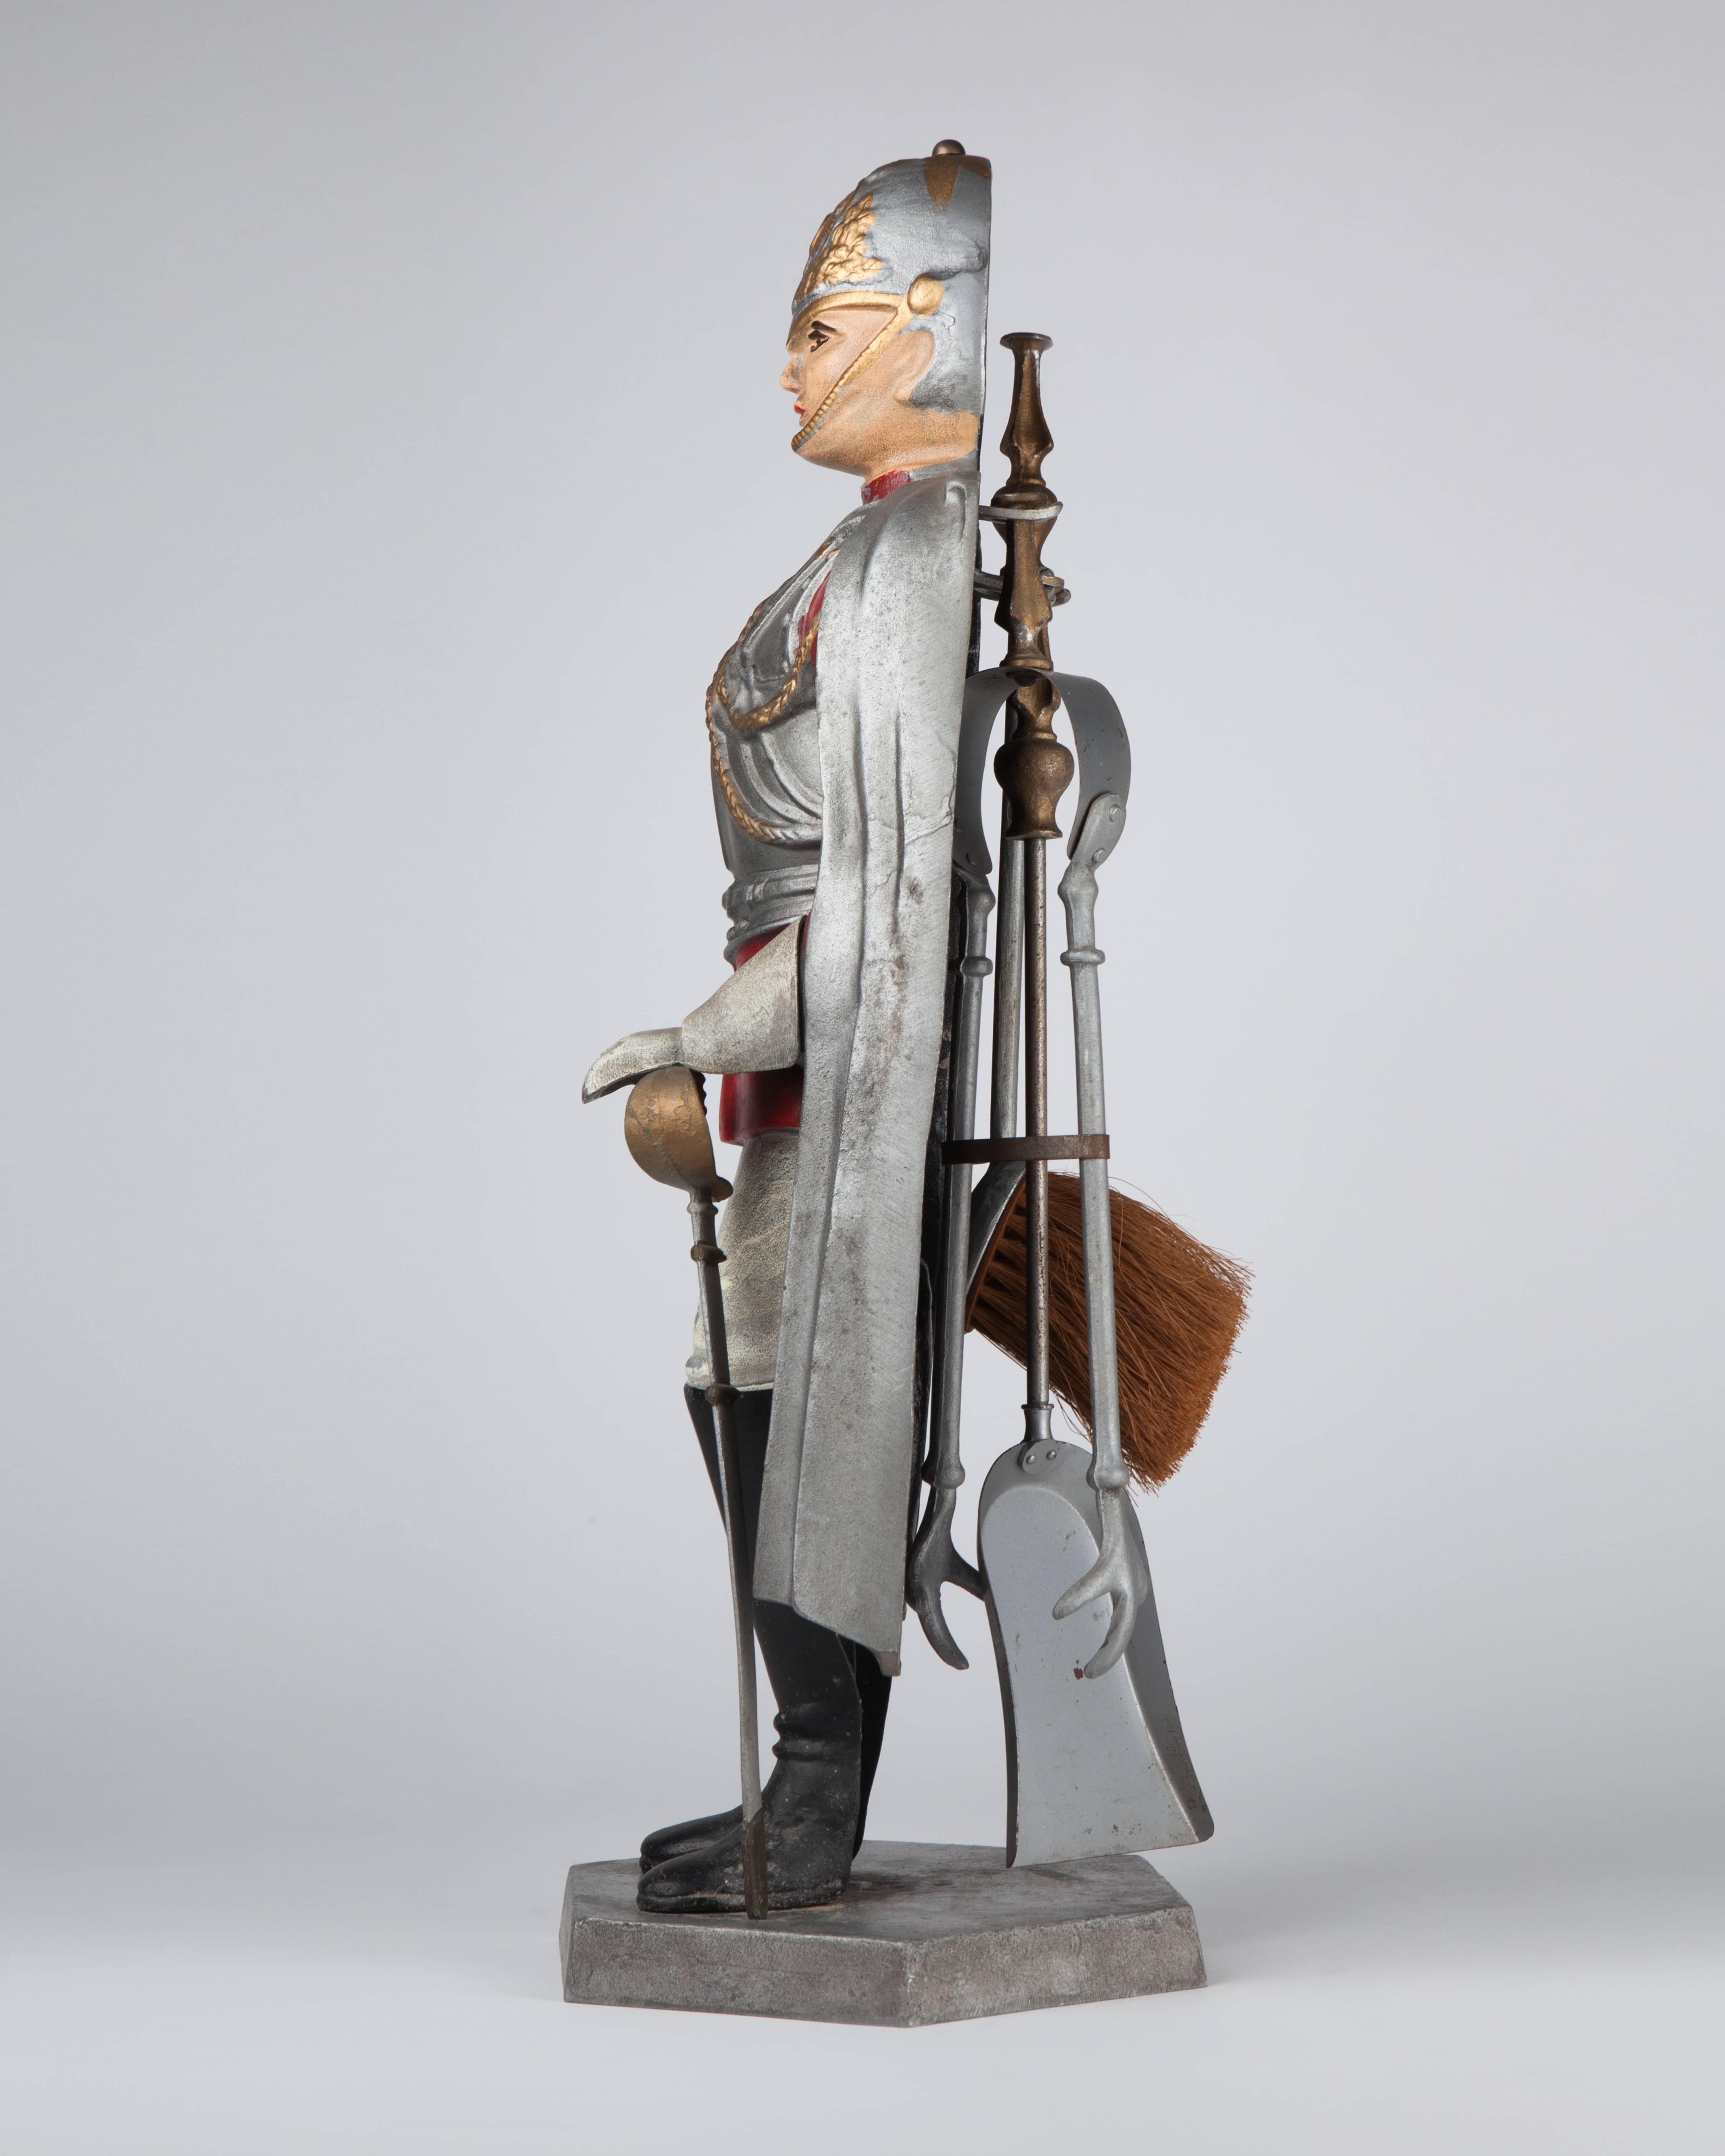 AFP0537
Une statue en métal moulé et peint représentant une sentinelle en armure tient un ensemble d'outils classiques comprenant une brosse, un tisonnier et une pince.

Dimensions :
Dimensions générales : 25-1/2